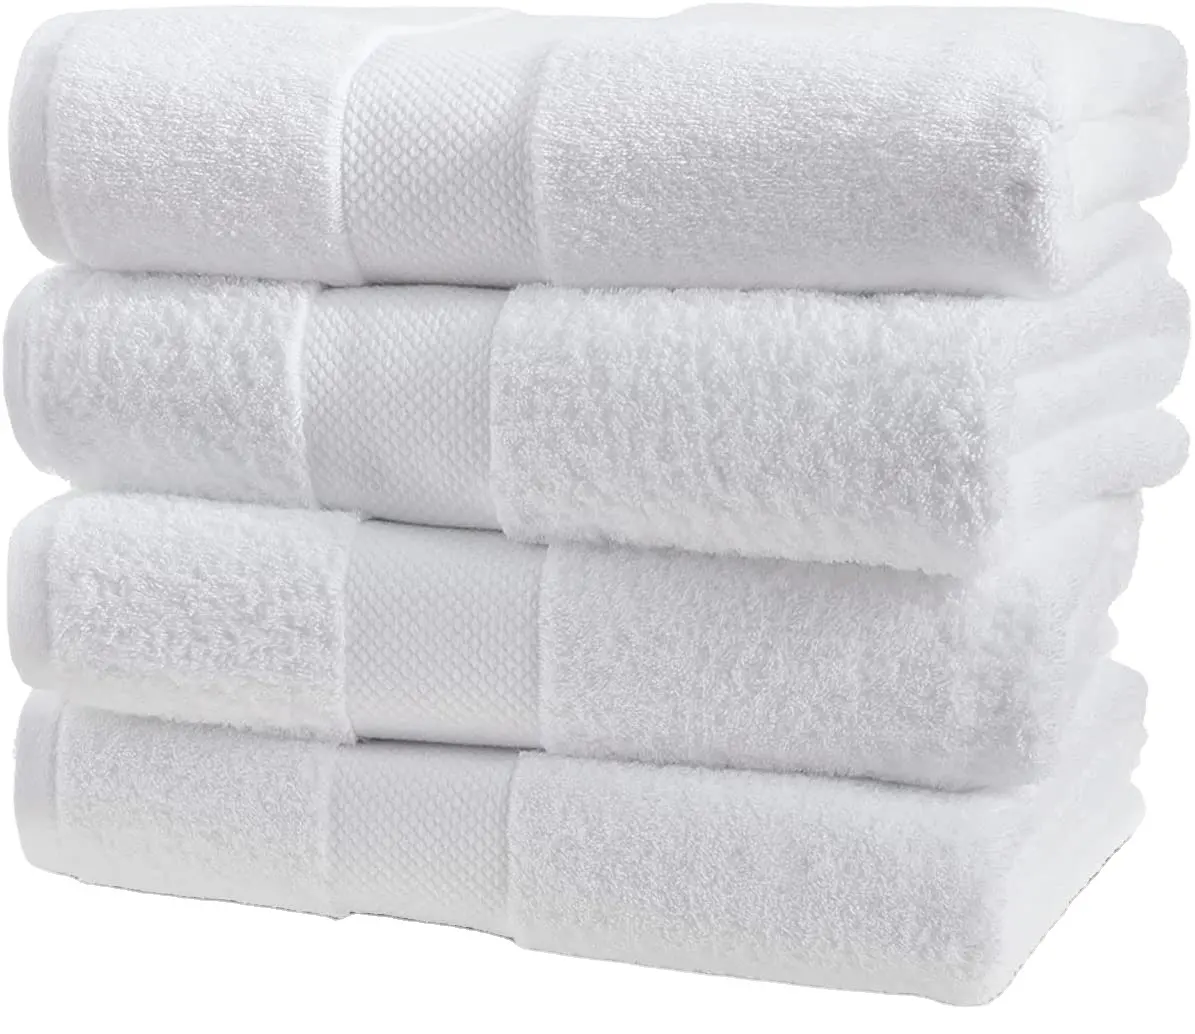 100% Baumwolle Luxus Badet uch Badet uch Set super weich und saugfähig Hotel hochwertige Handtuch benutzer definierte Logo